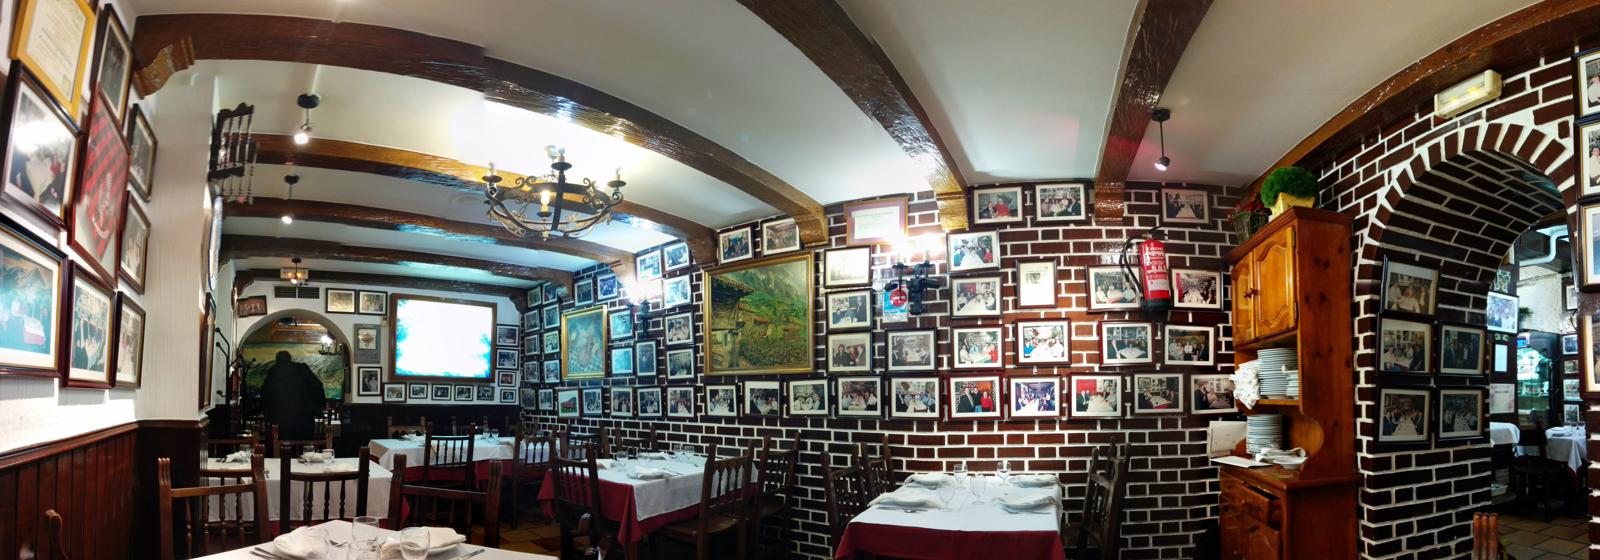 Inside the little restaurant